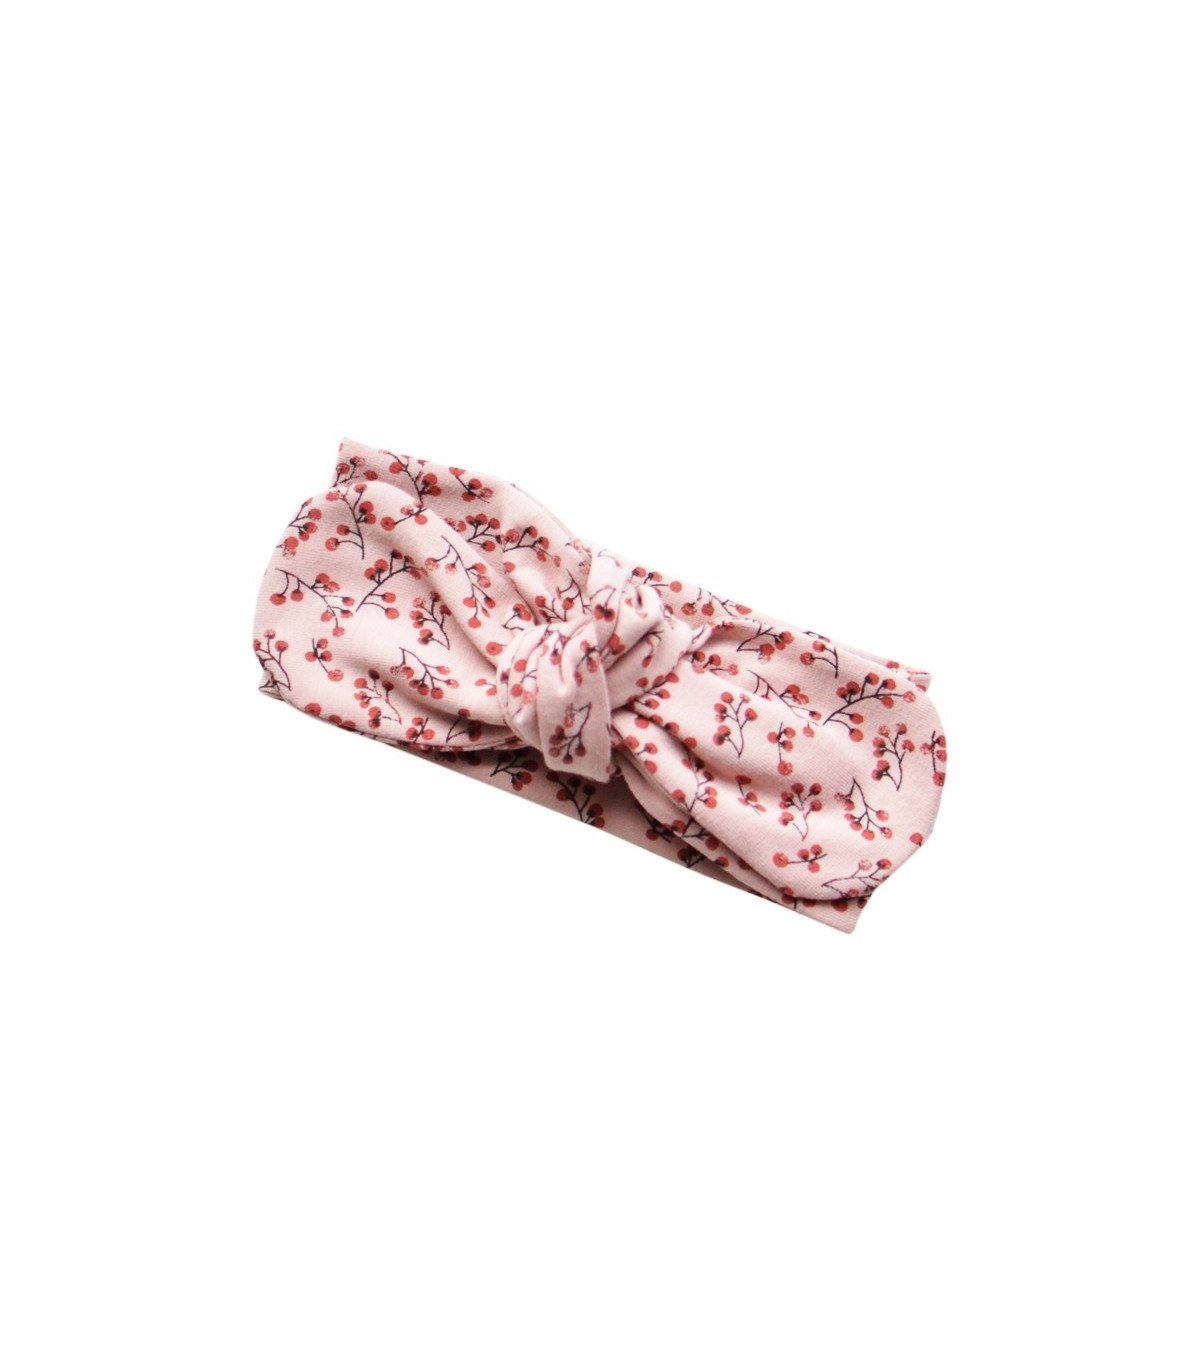 nøje Afstemning klassekammerat Sødt hårbånd pige » Flot blomsterprint i rosa nuancer. 100% Øko-tex